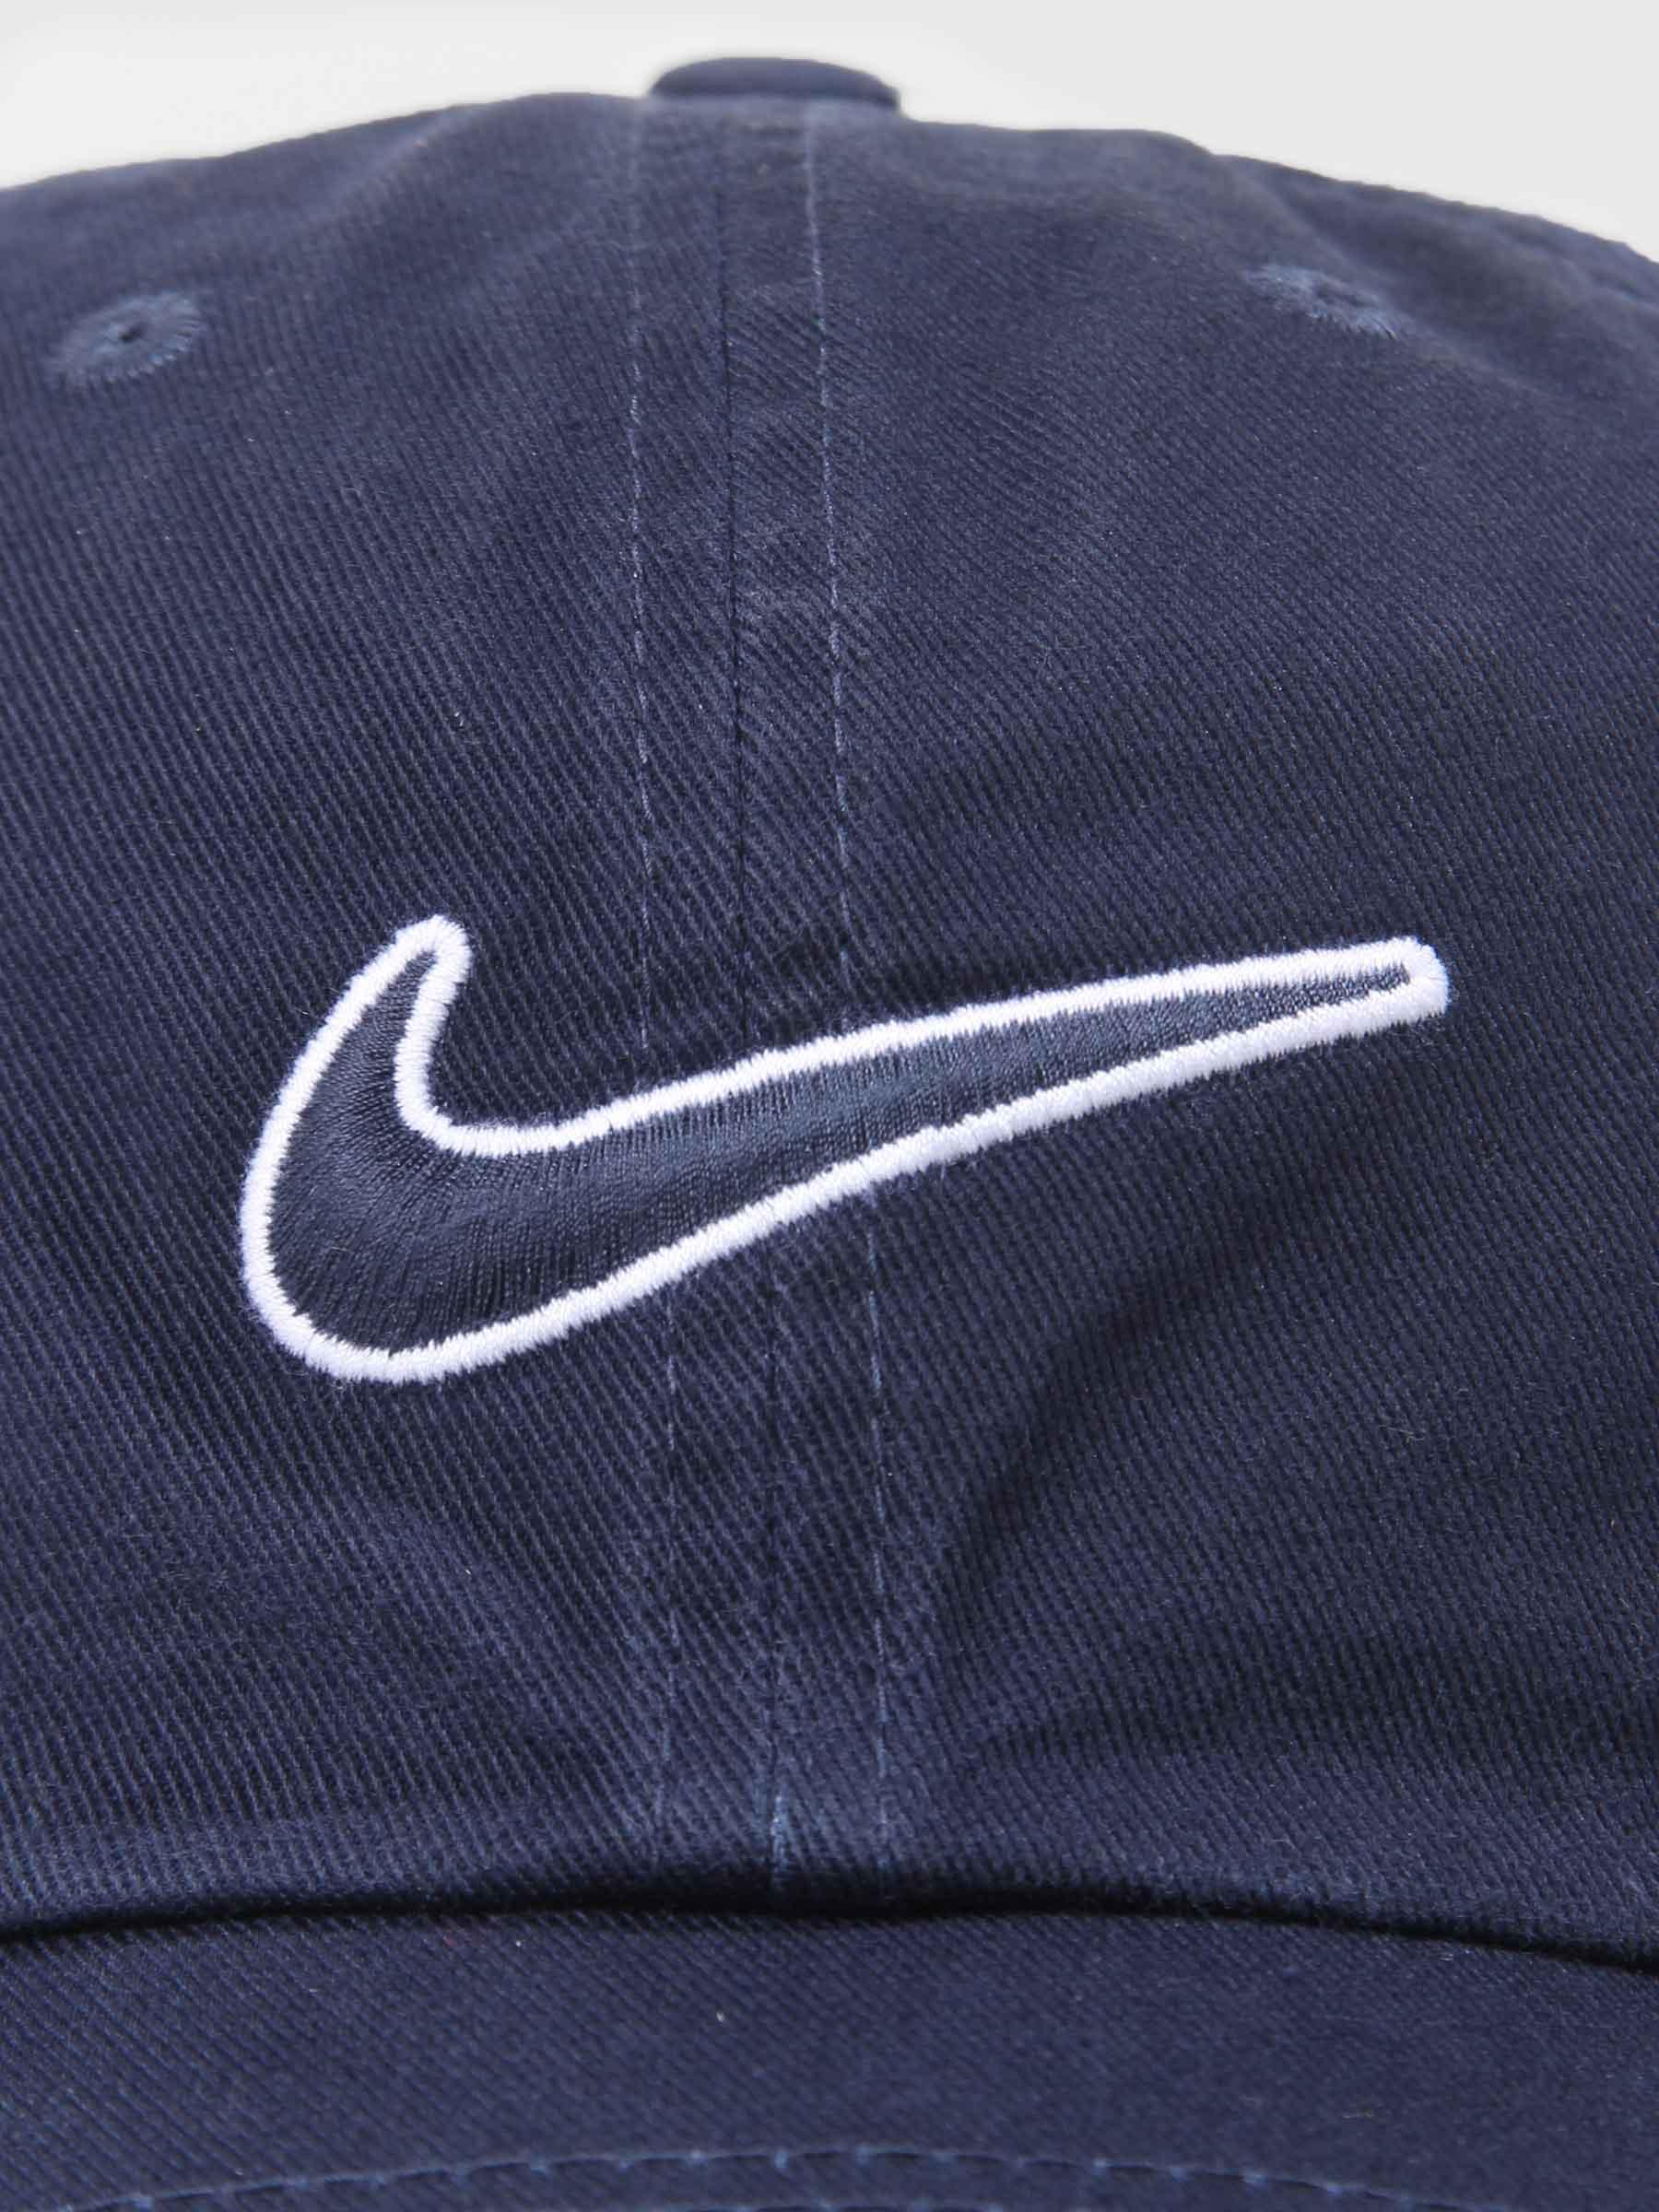 Nike NSW Heritage 86 Cap - Freshcotton